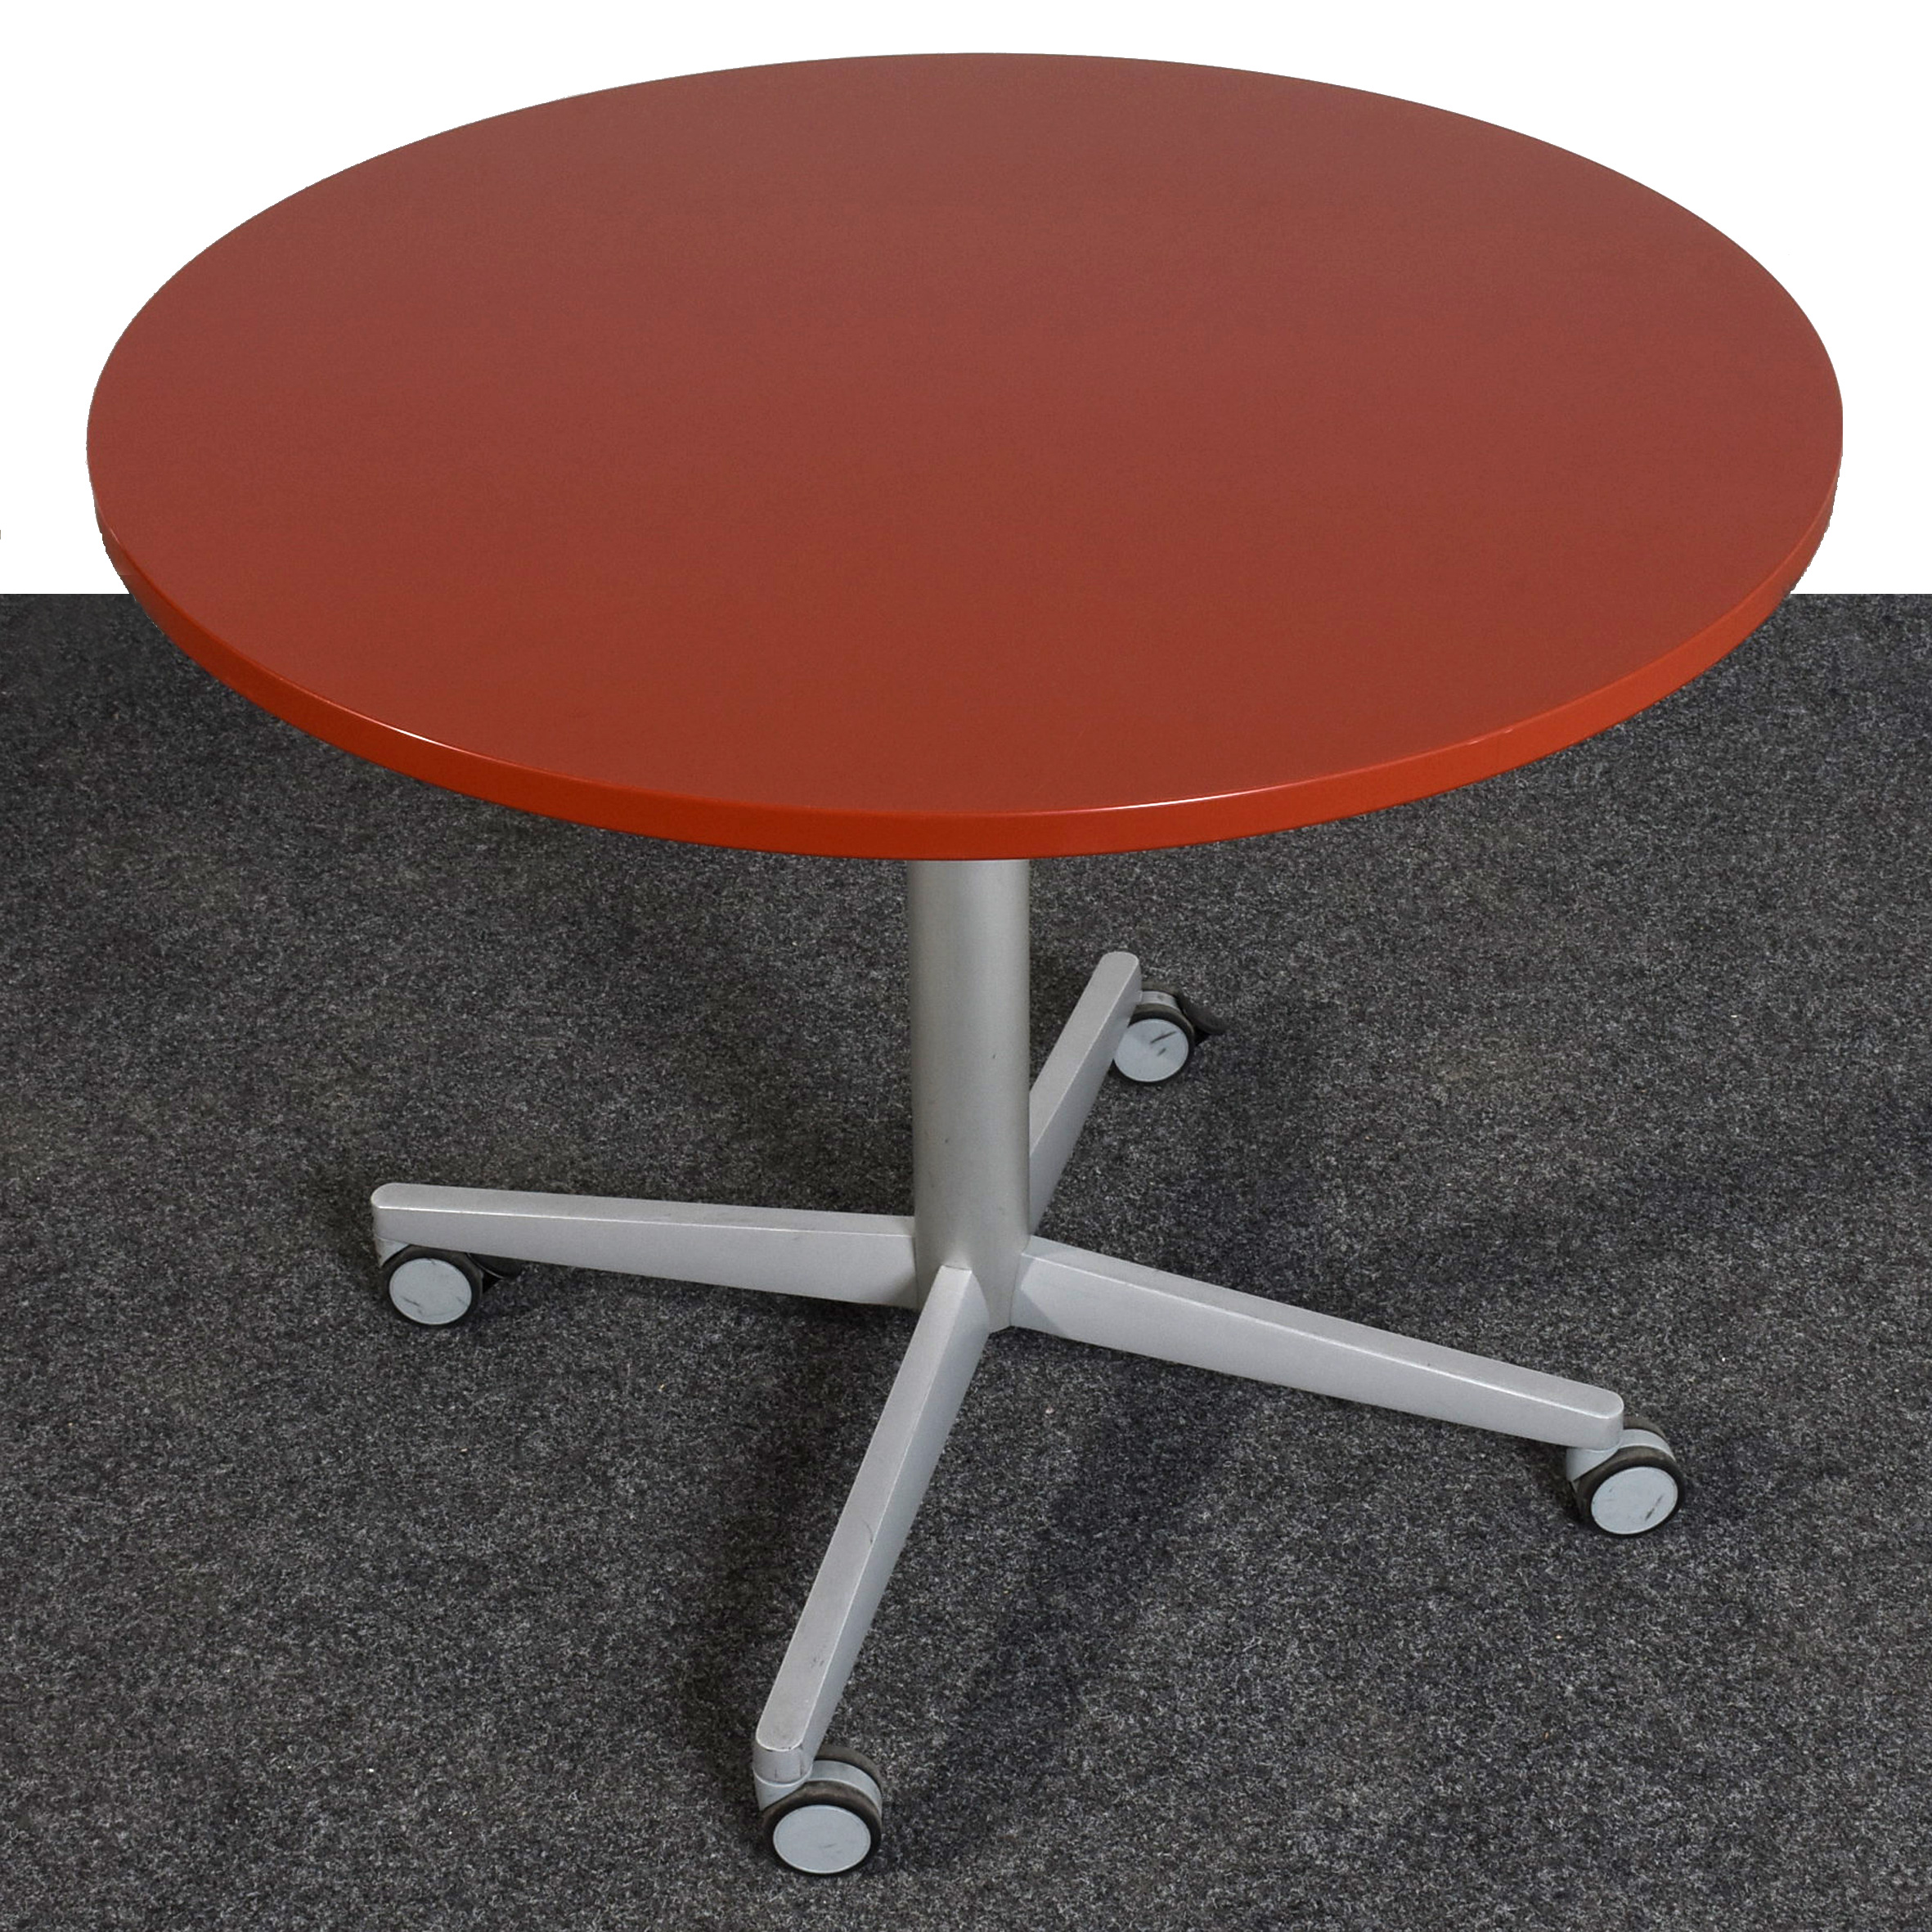 Bene, runder Tisch Ø90, Platte bordeaux, 4 Stern Fuß silber, auf Rollen, gebraucht